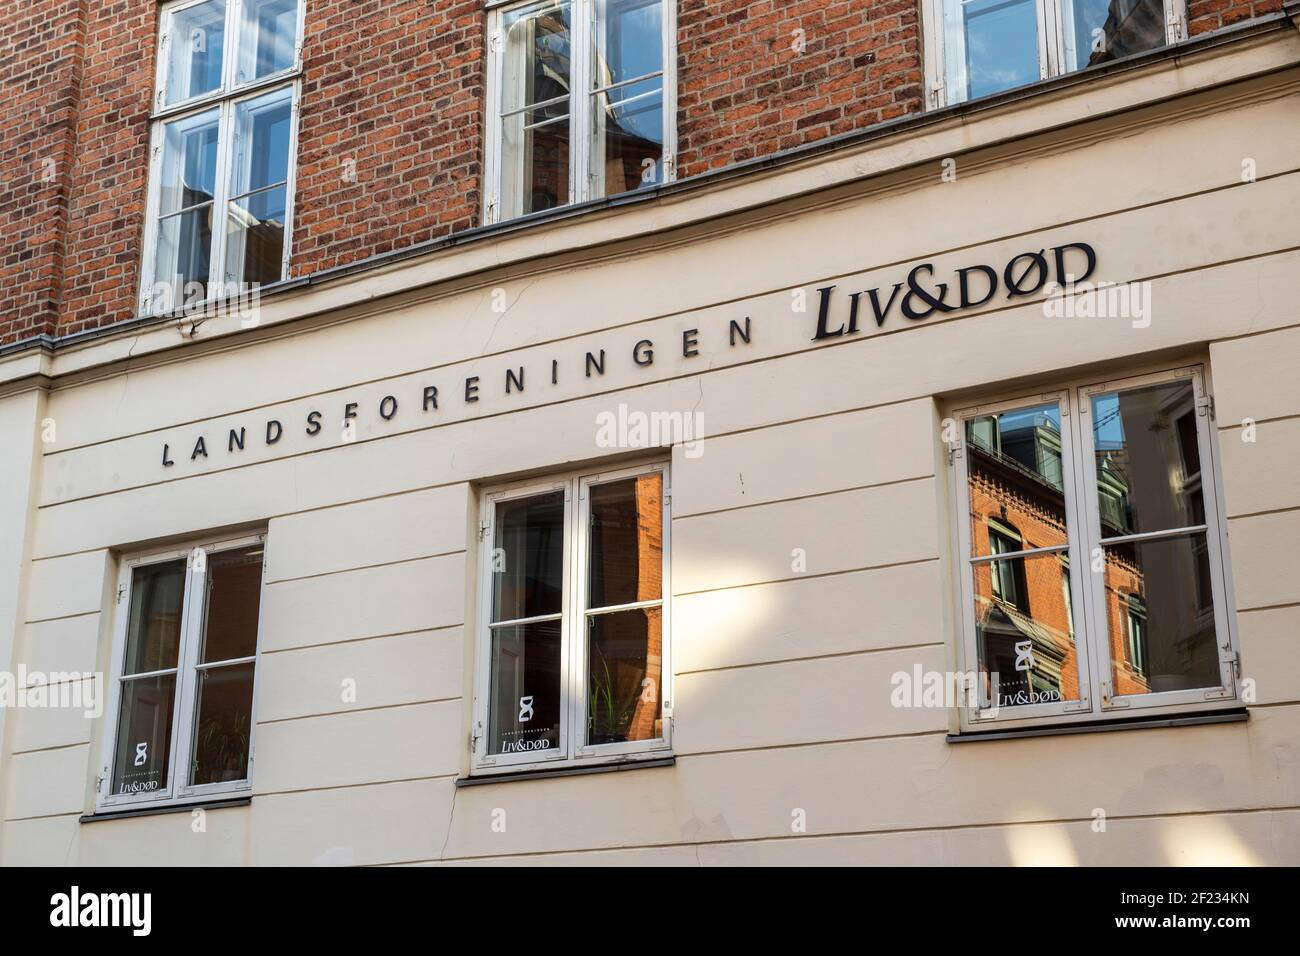 L'Association nationale pour la vie et la mort (Landsforeningen Liv & Død) de Copenhague est une organisation humanitaire à but non lucratif. Leur but est de le faire Banque D'Images